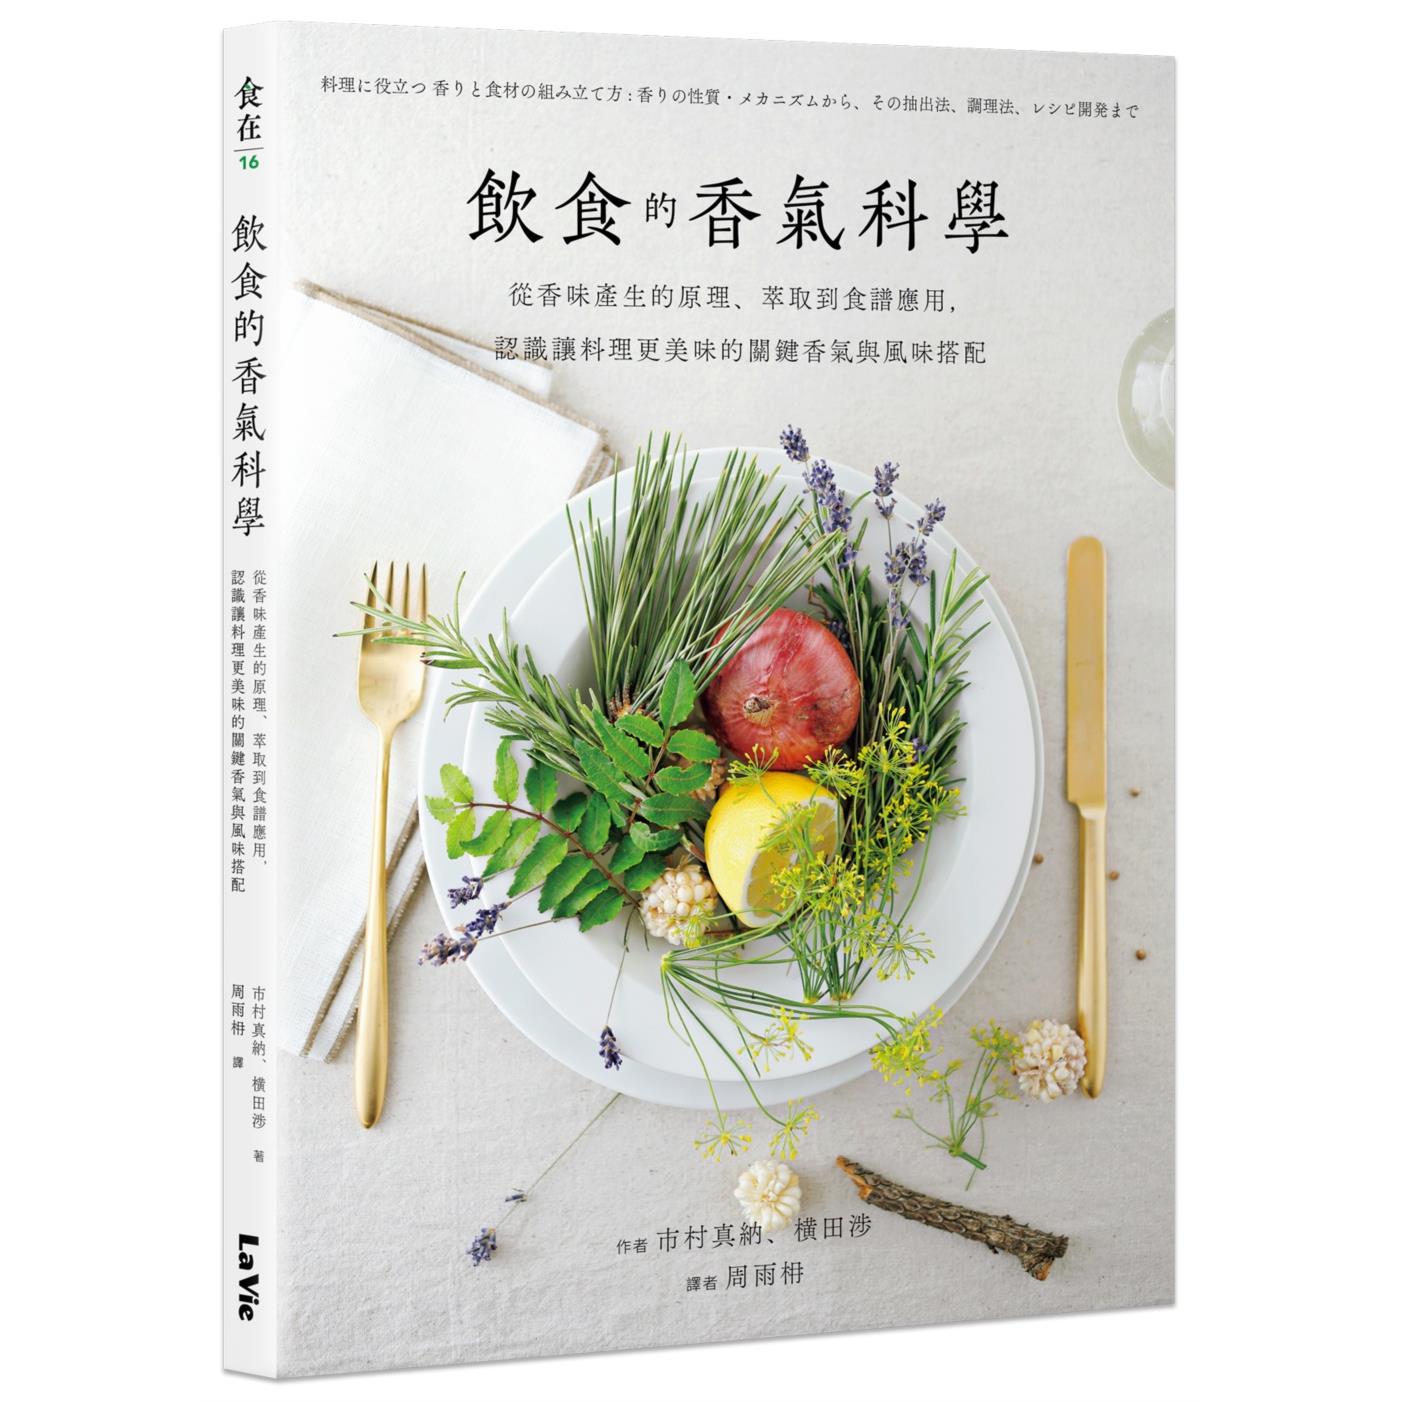 詳しい 野菜料理百科事典 全3巻 函入り - 本